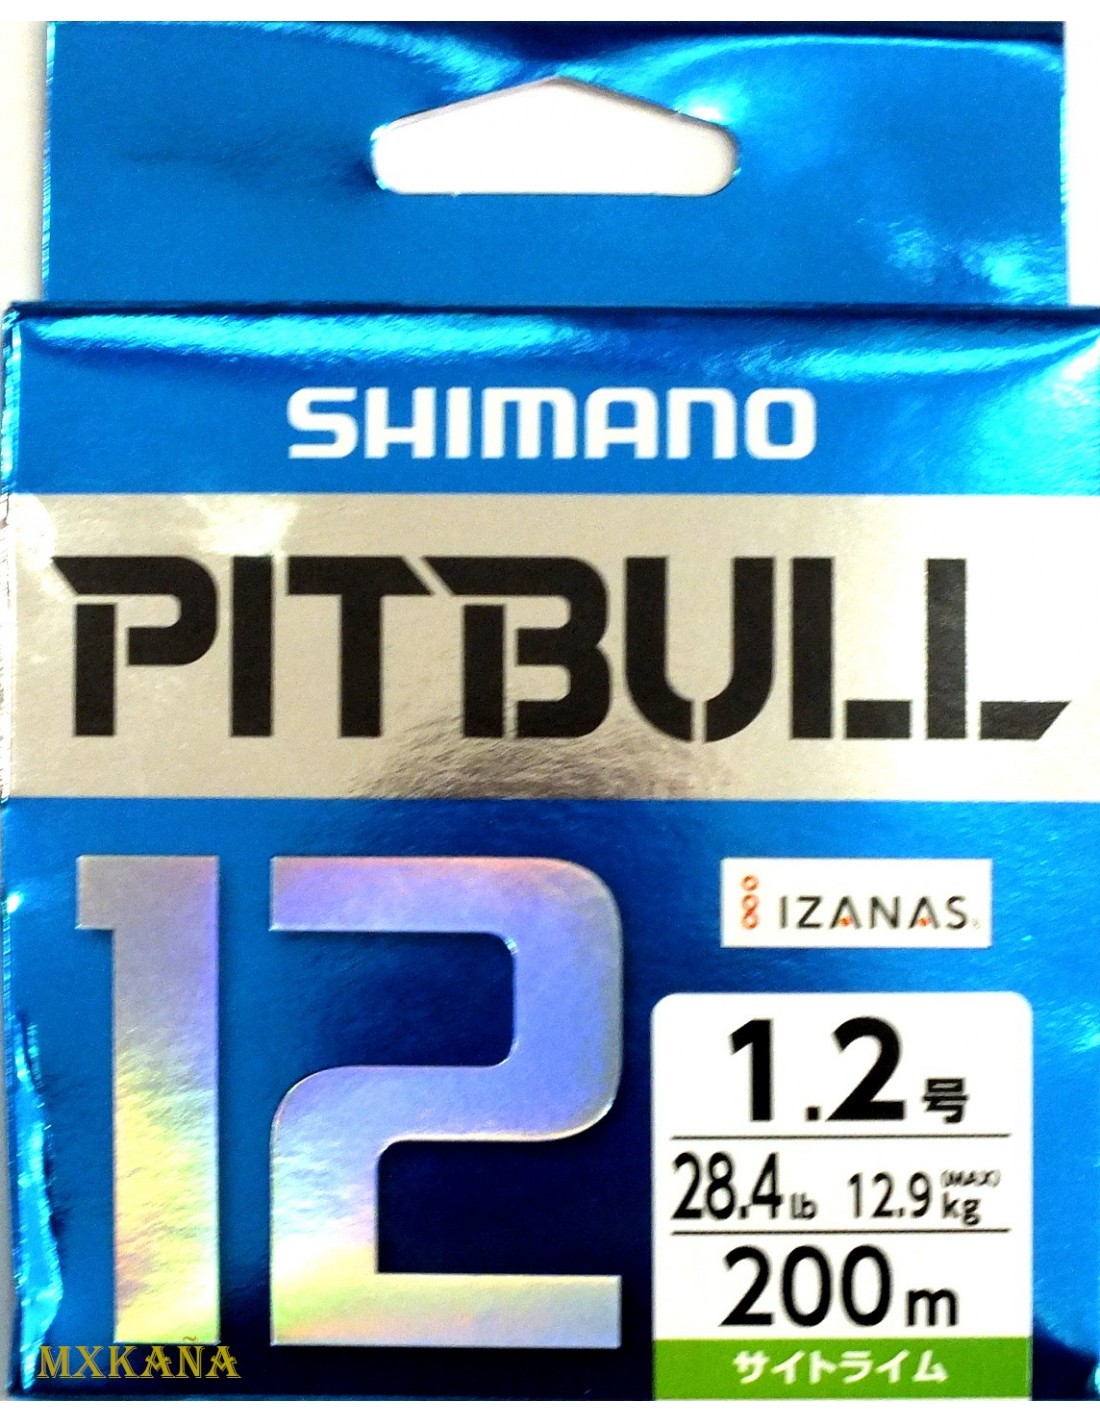 Shimano Pitbull 12 200m